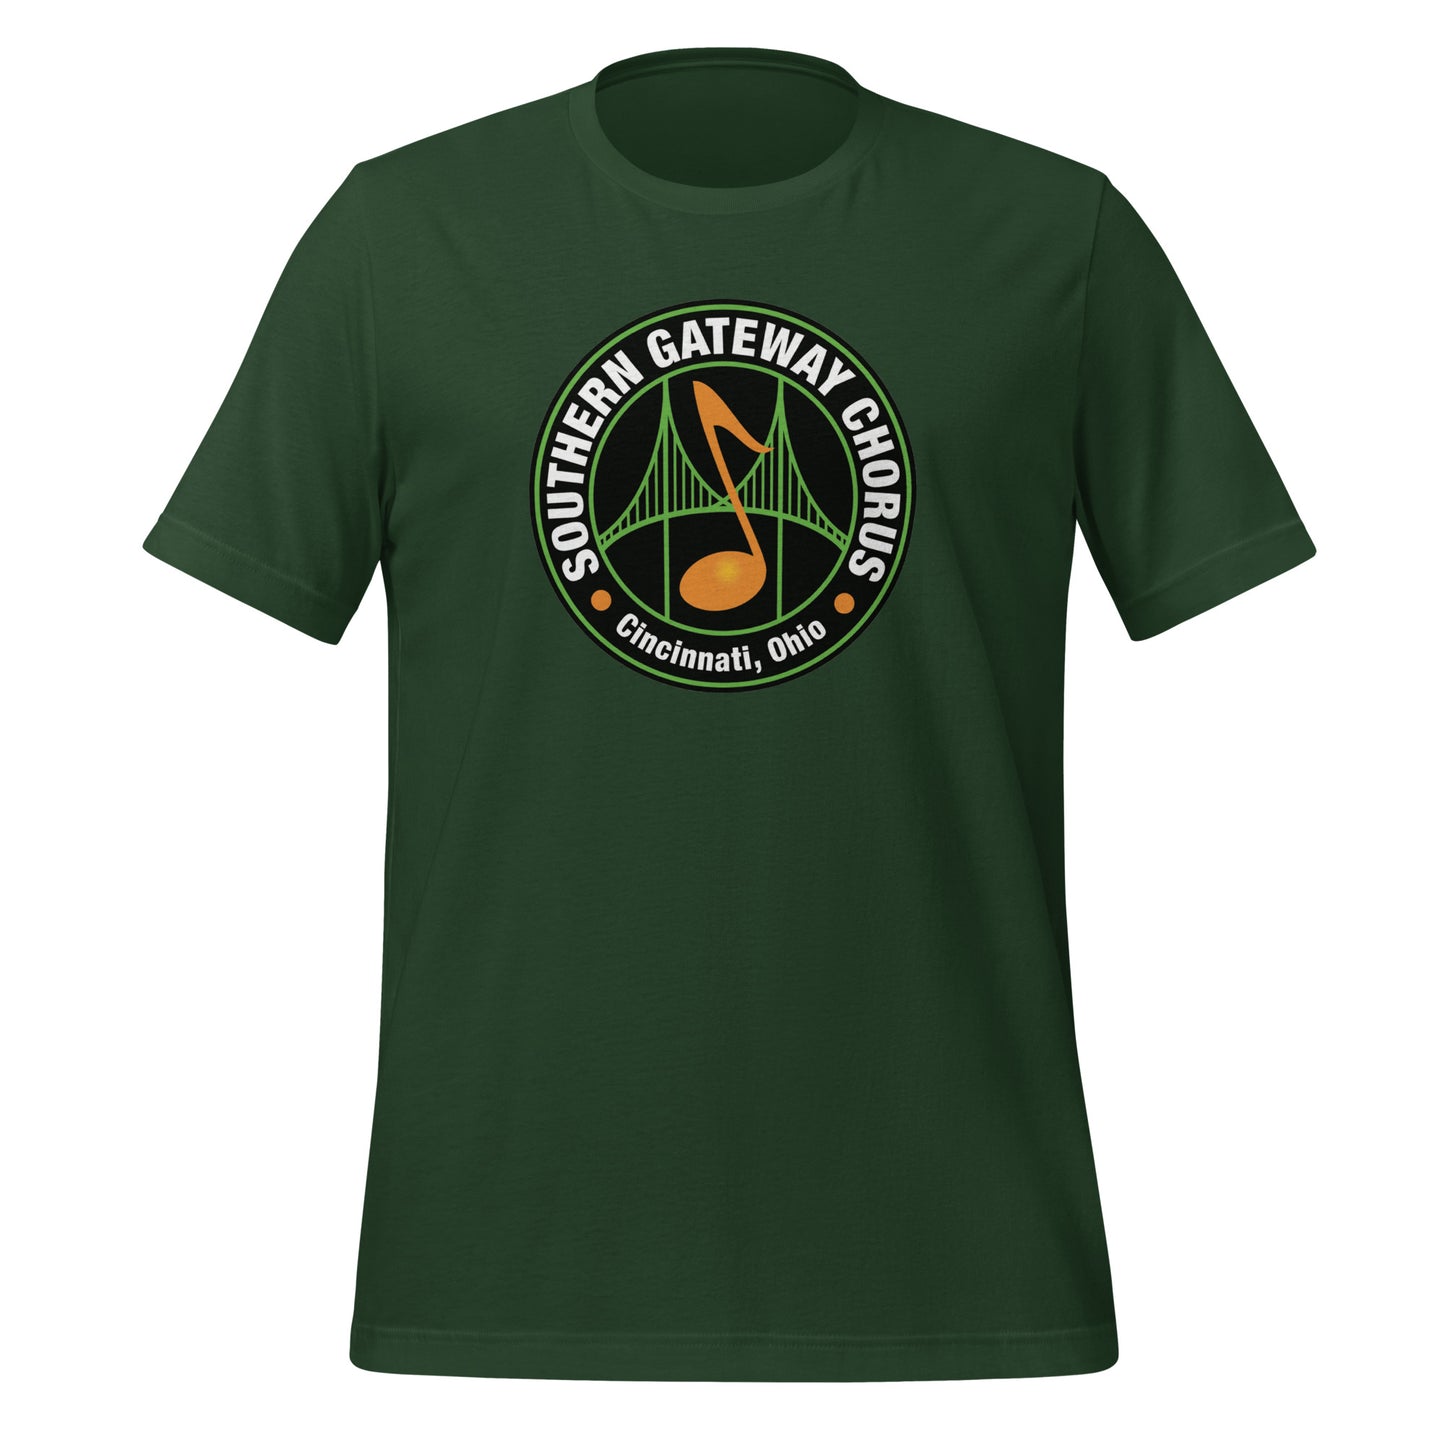 Southern Gateway Chorus - Regular Fit Printed t-shirt